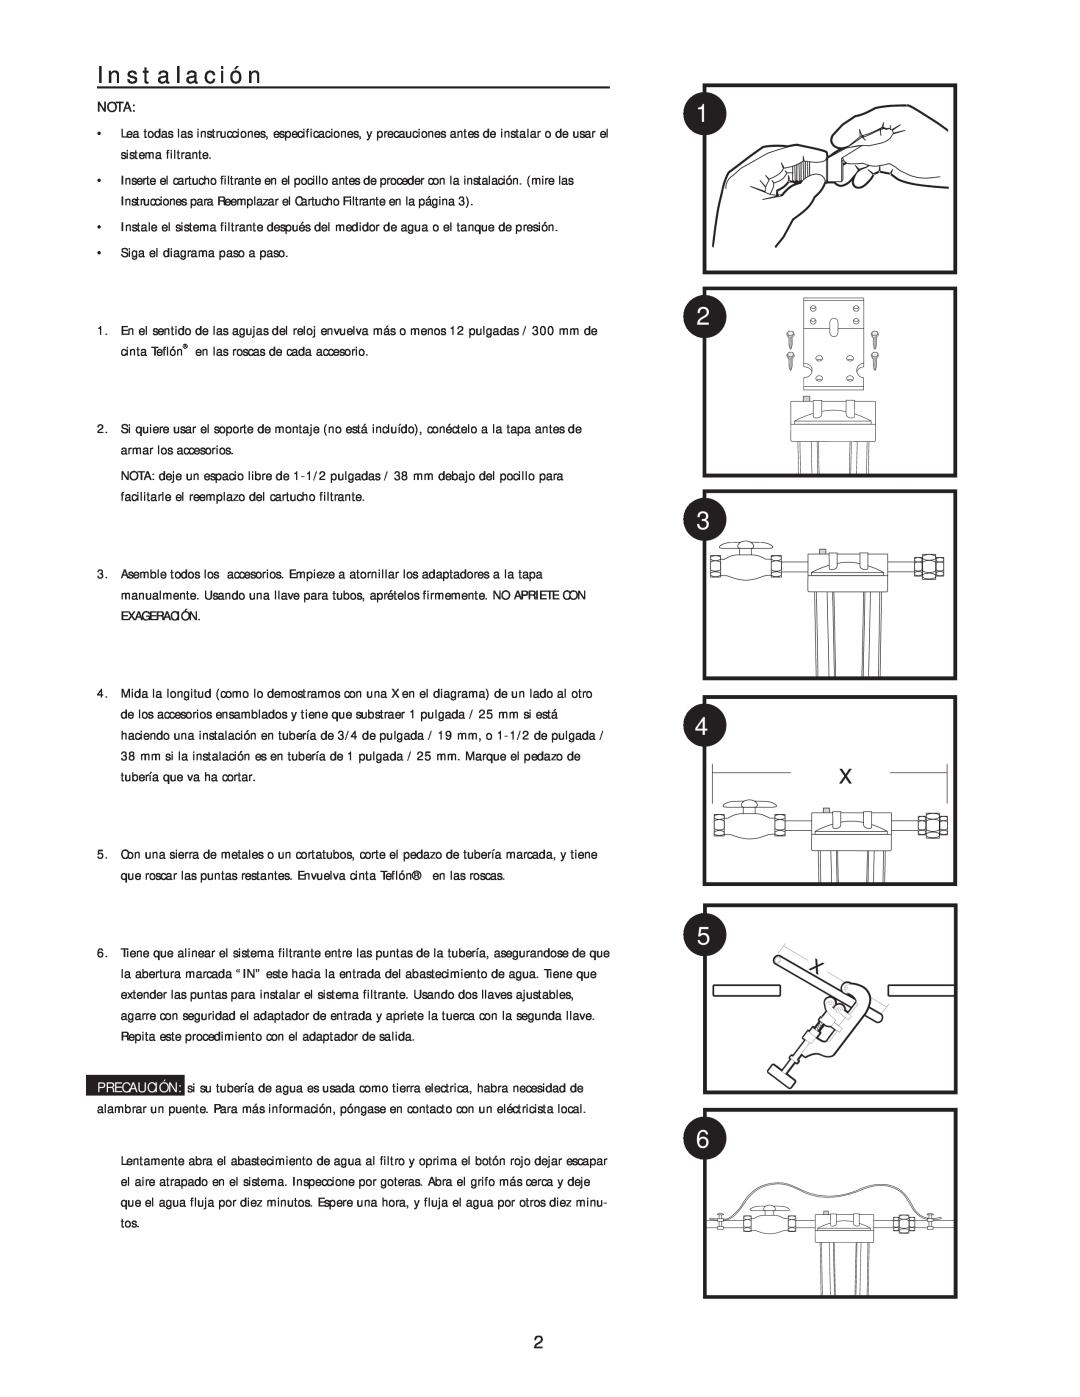 Kenmore HD-950 manual Instalación, Nota, Siga el diagrama paso a paso 